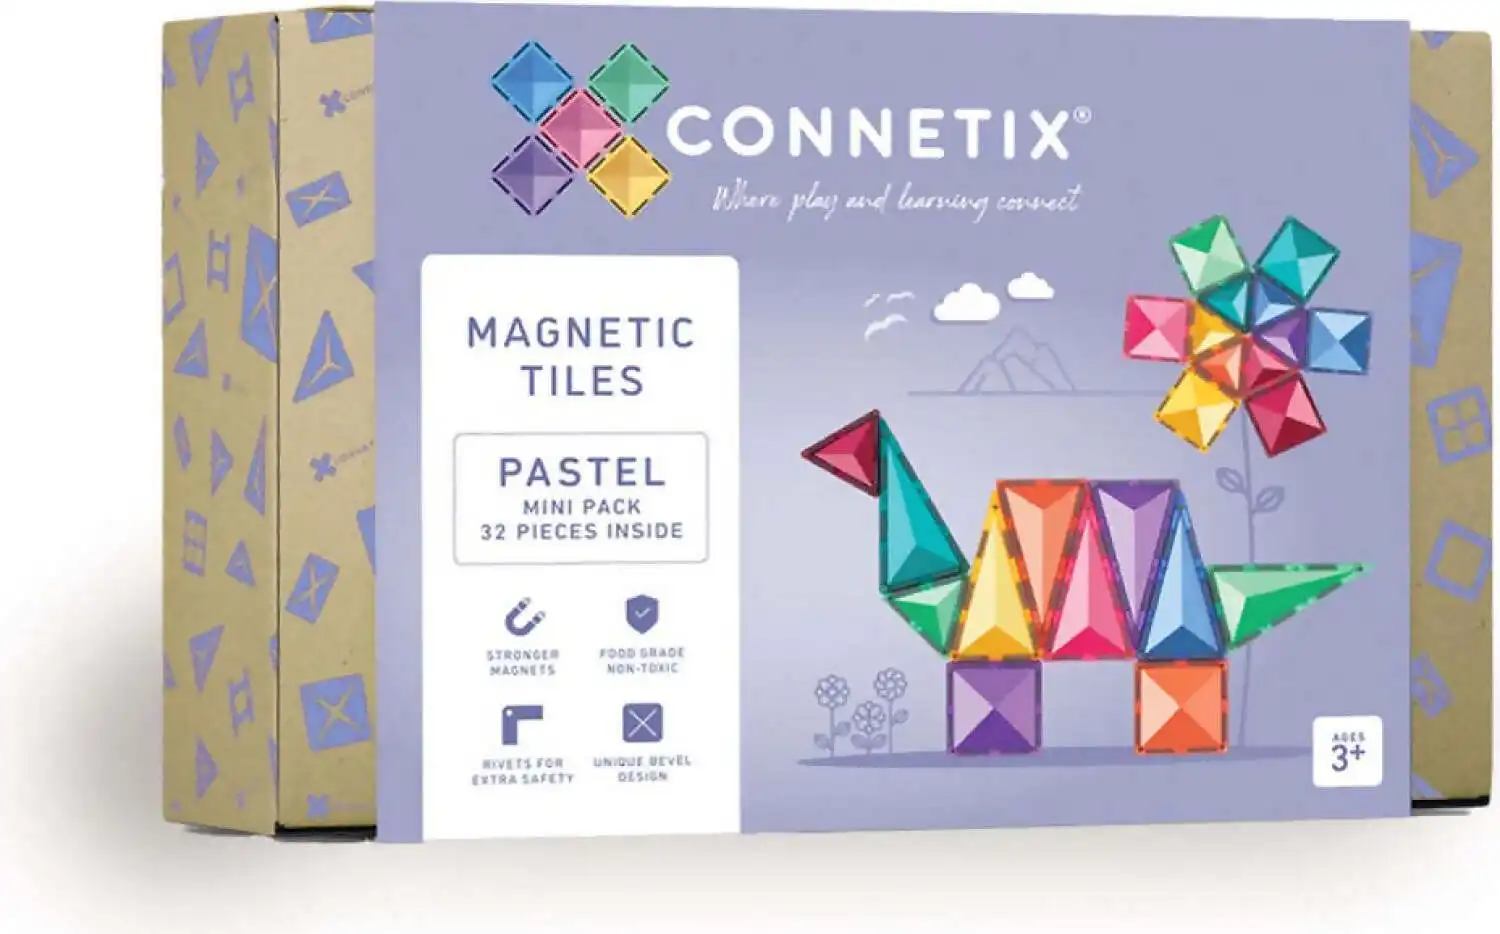 Connetix - Magnetic Tiles 32 Piece Pastel Mini Pack